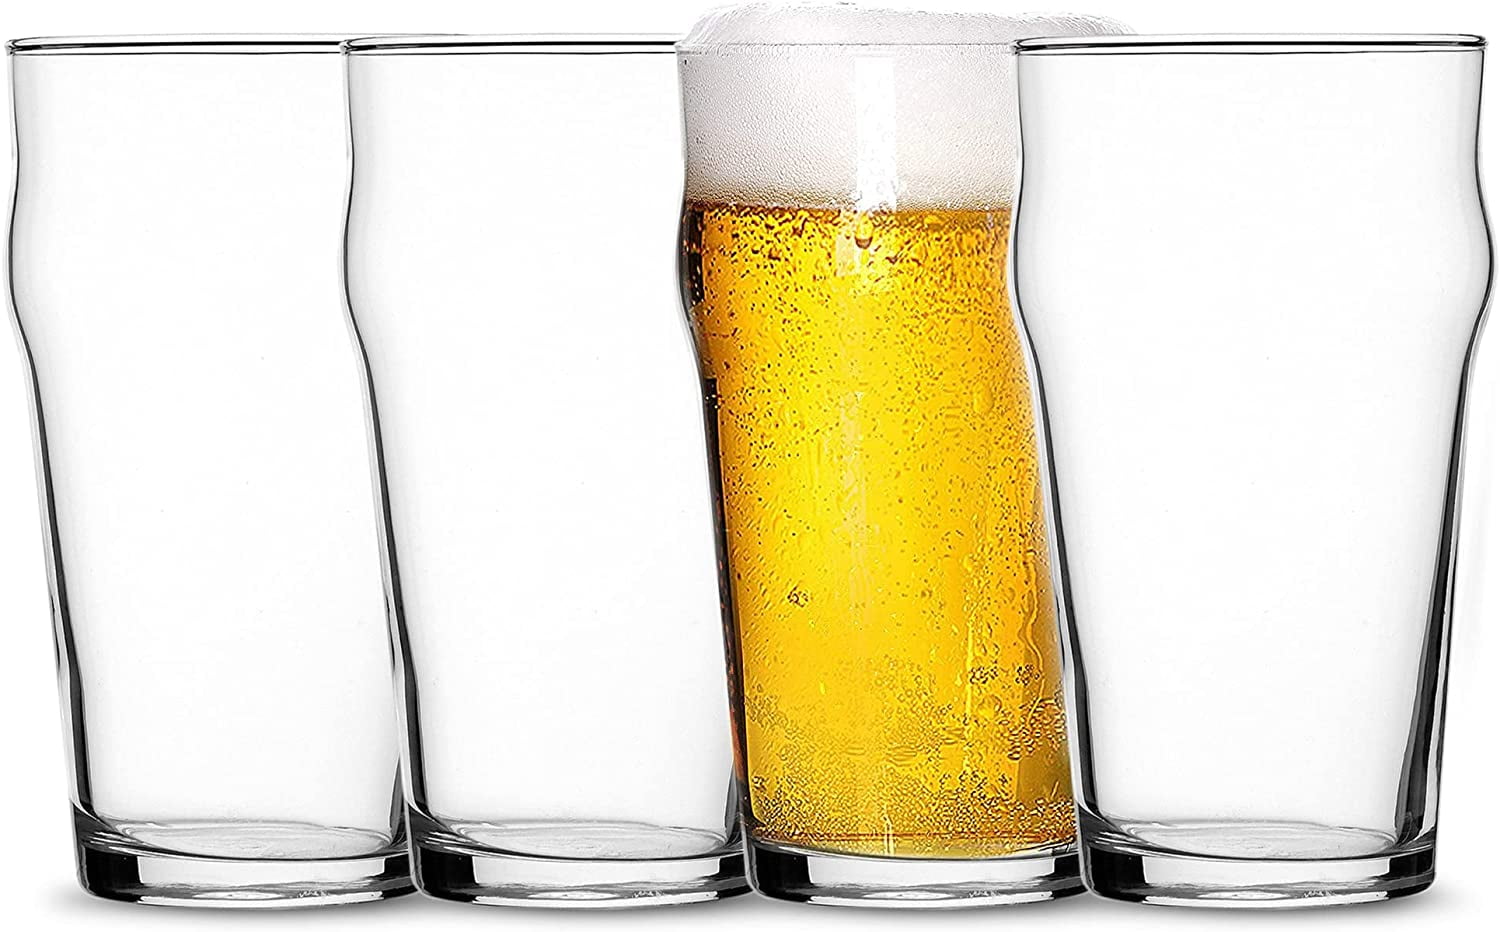 Nonix 19.75 oz. Stackable Pub Beer Glasses (Set of 12)